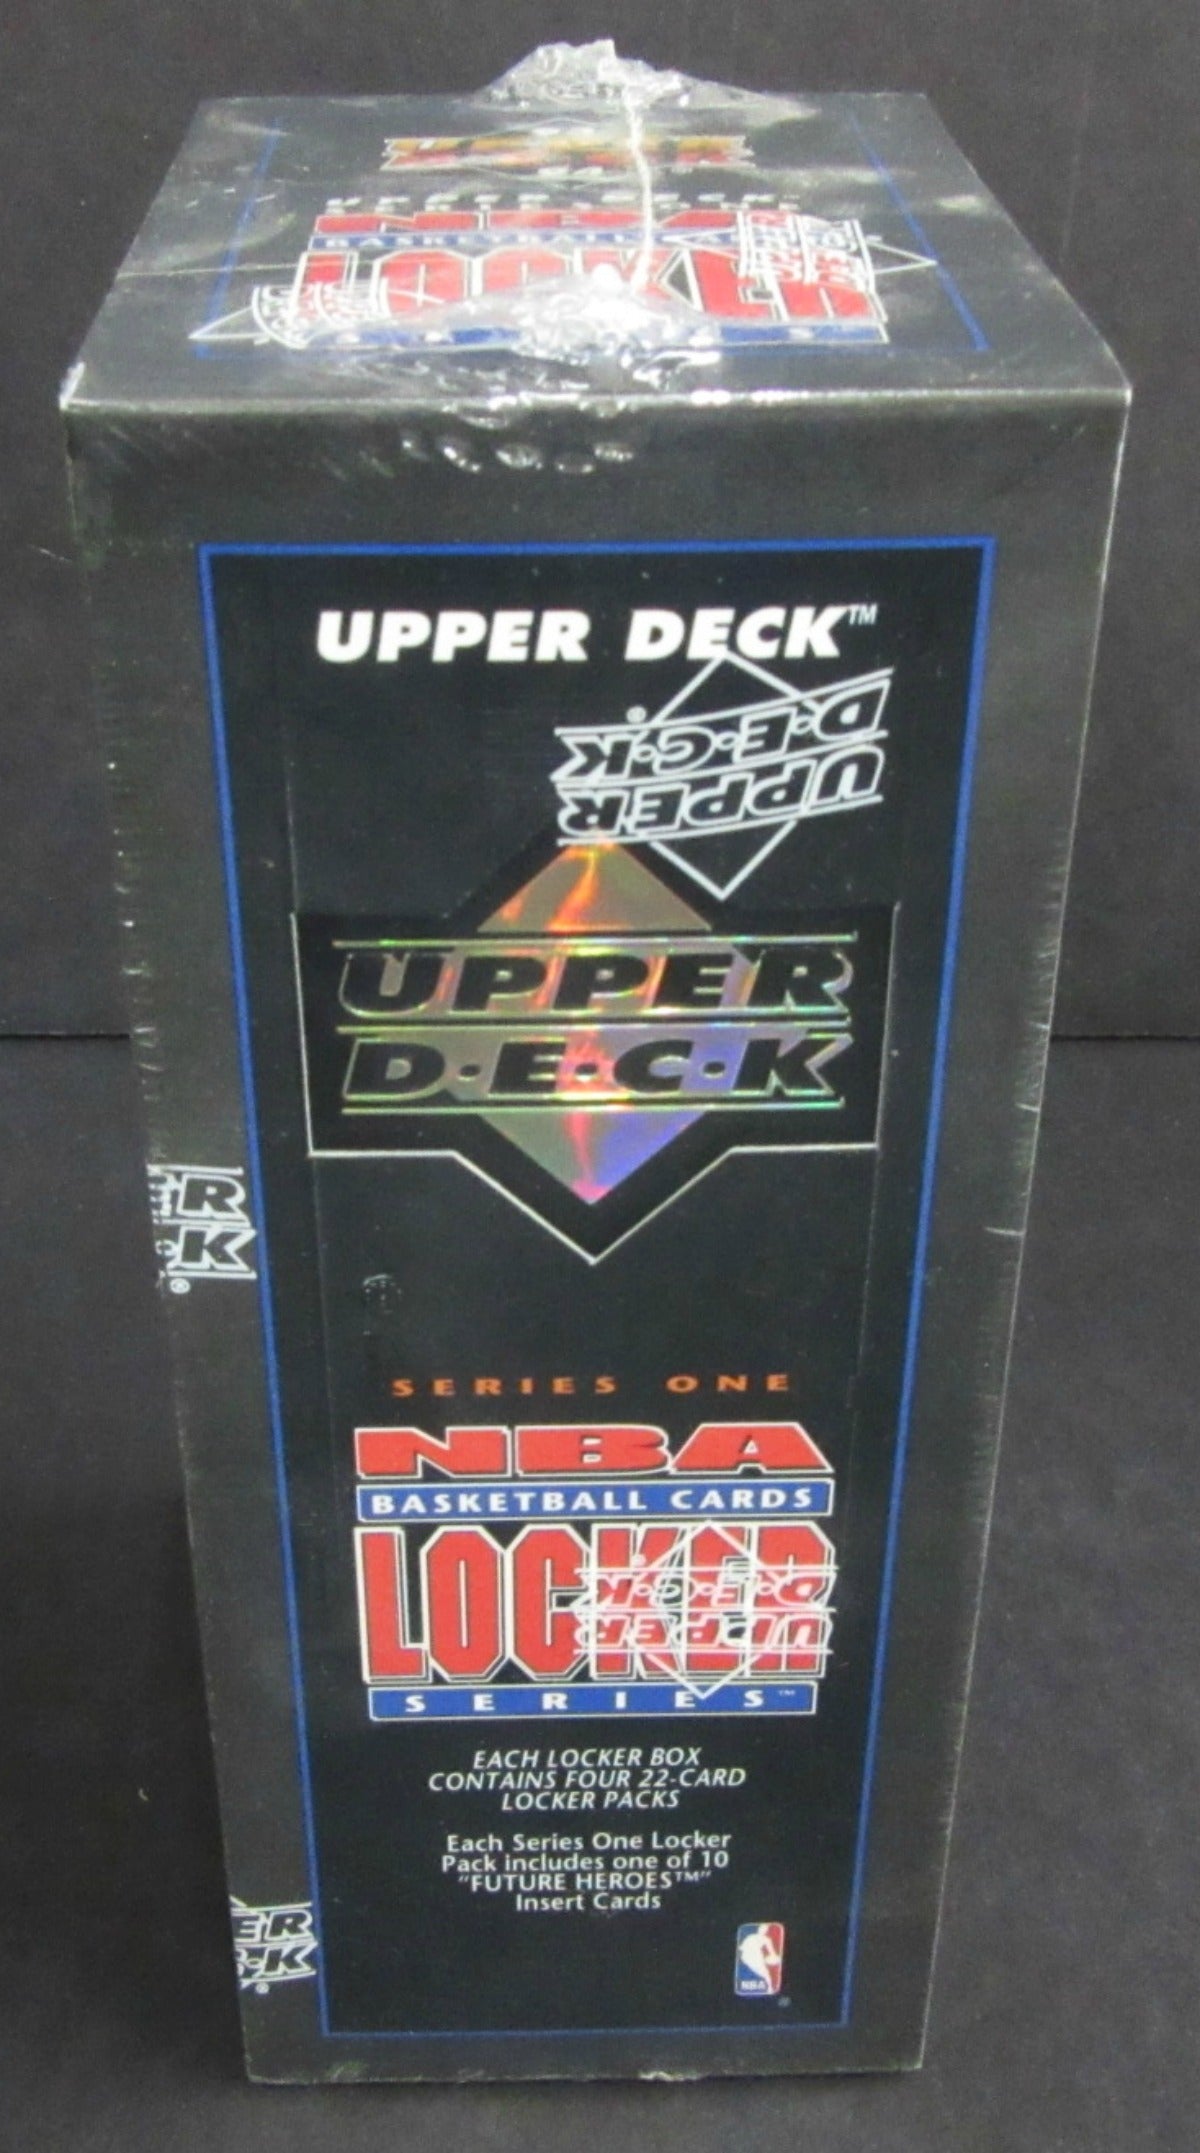 1993/94 Upper Deck Basketball Series 1 Locker